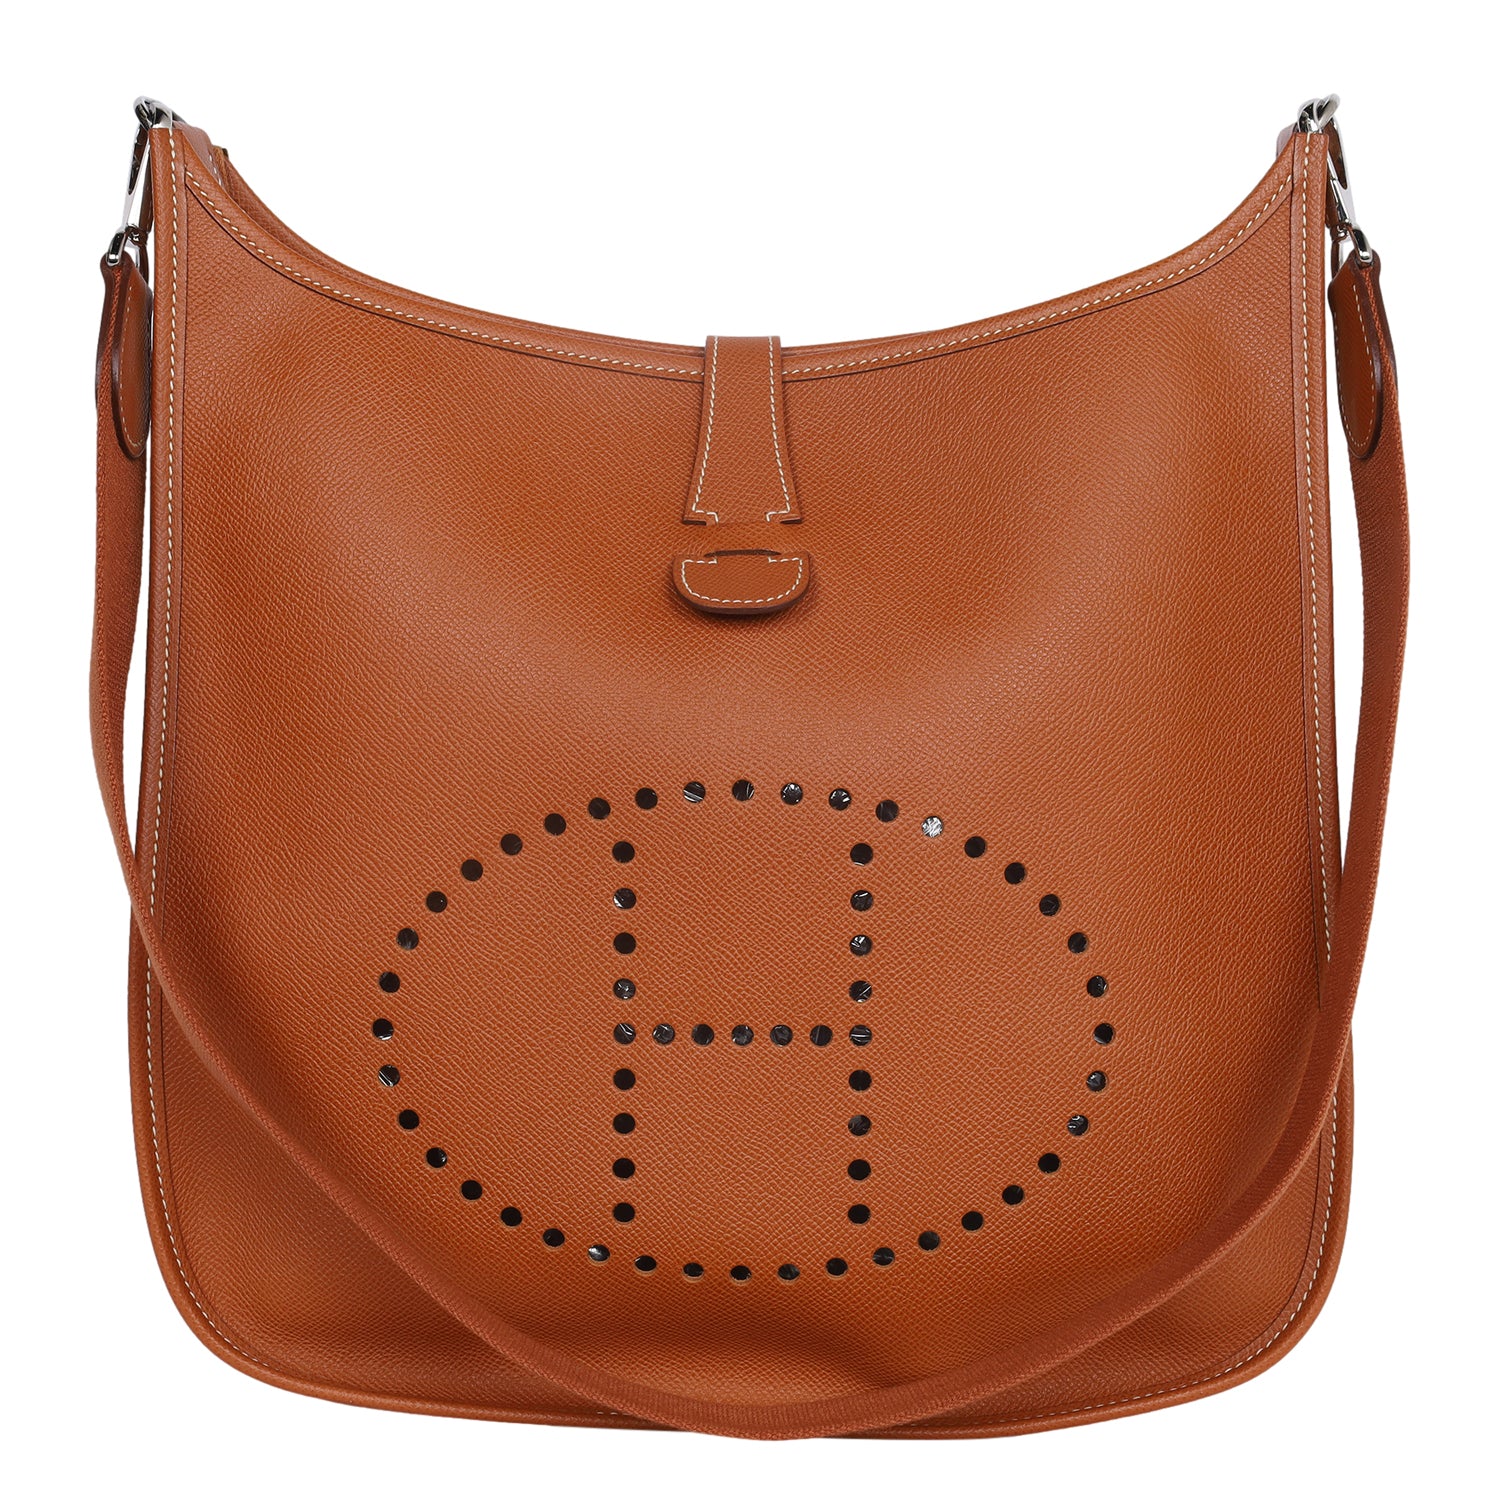 The Hermes Evelyne Bag